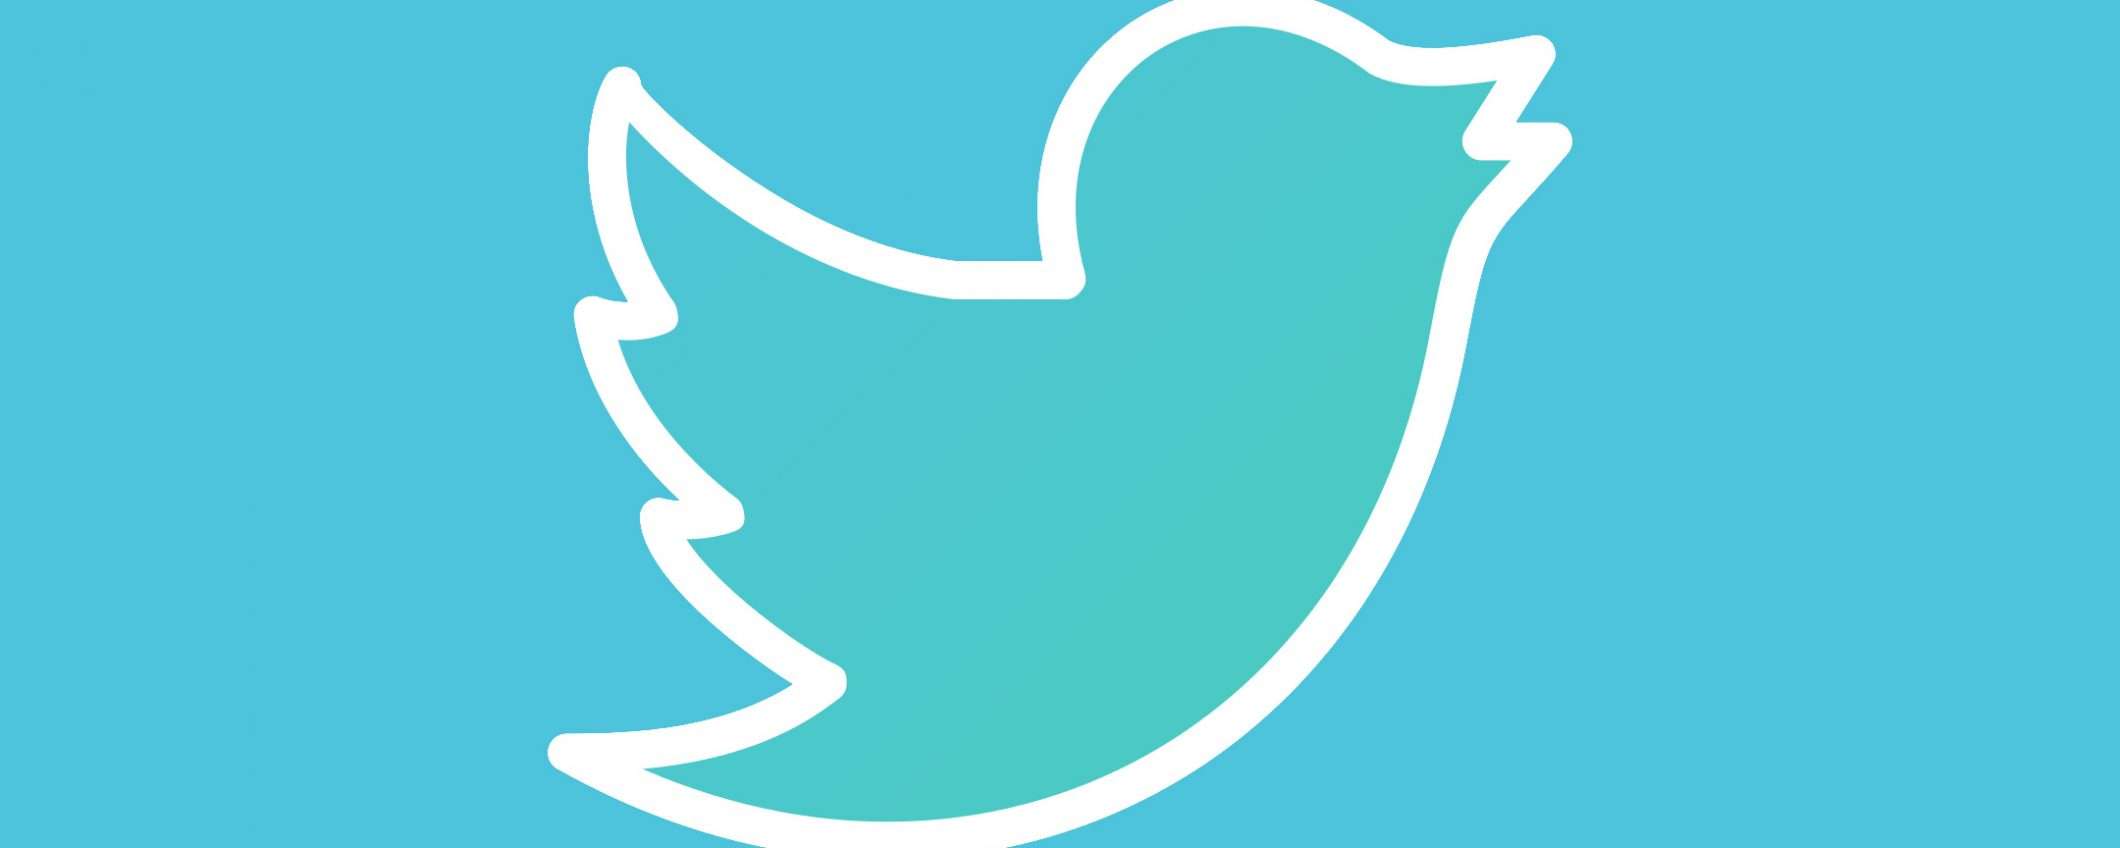 Twitter: un problema per privacy e advertising